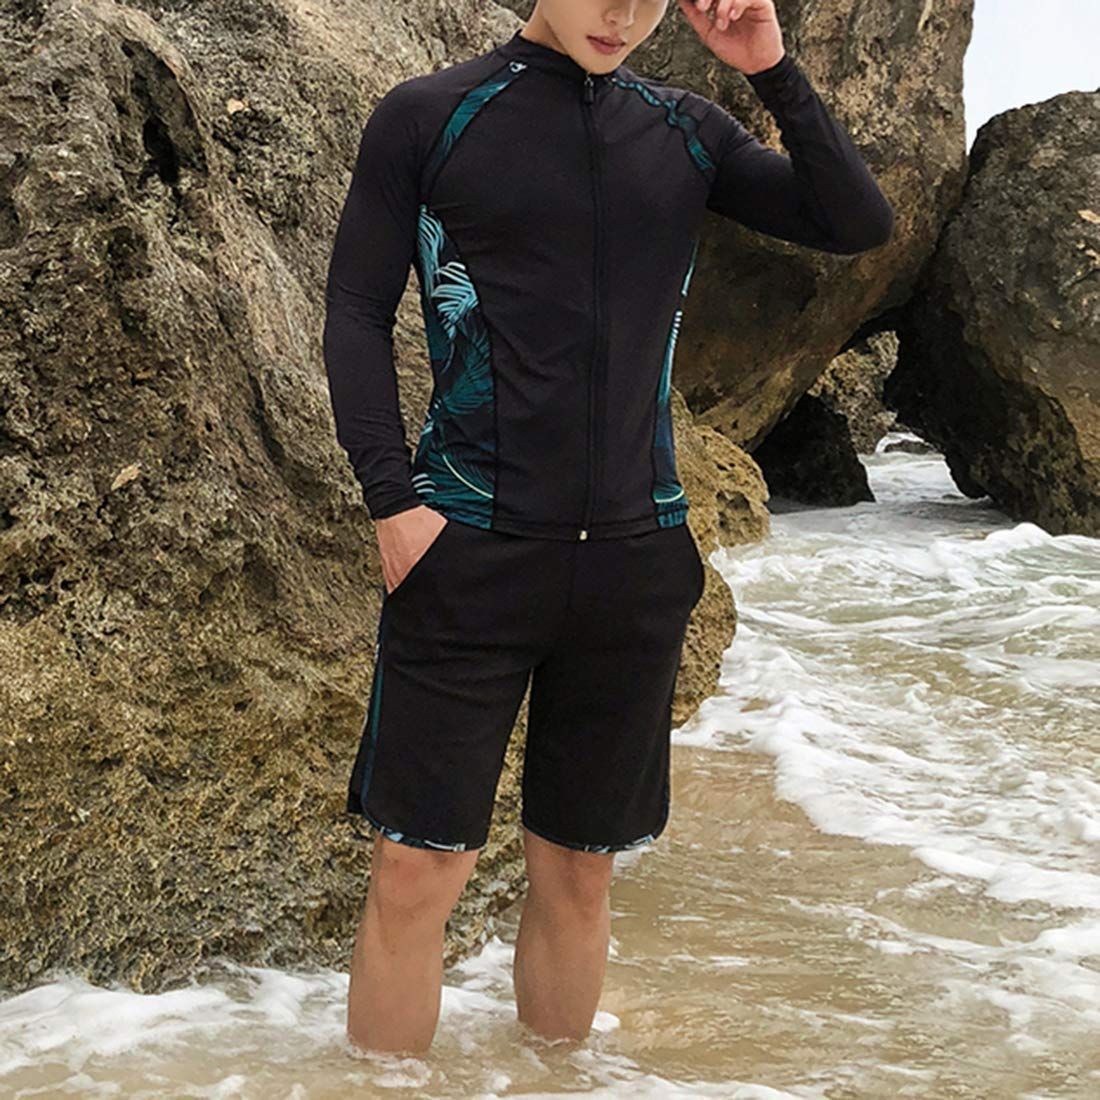 ZHPUAT ラッシュガード メンズ 水着 長袖 前開き レギンス サーフパンツ フィットネス 男性 UVカット温泉 ビーチ 水泳 スイミン